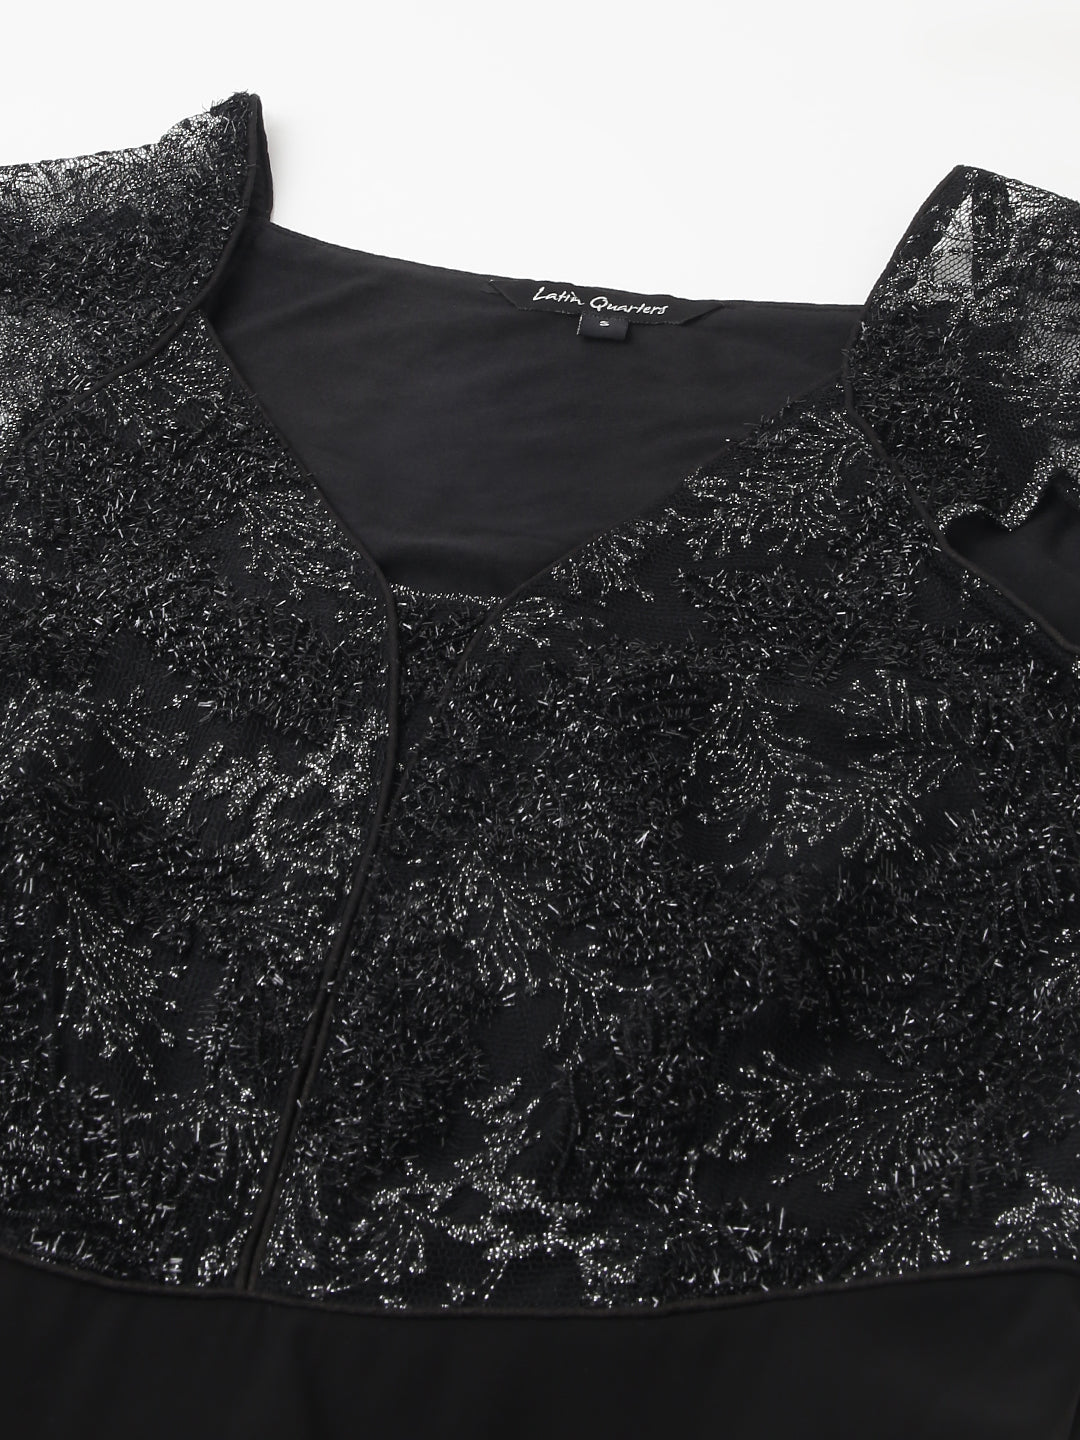 Black Cap Sleeve Solid Sequin Dress